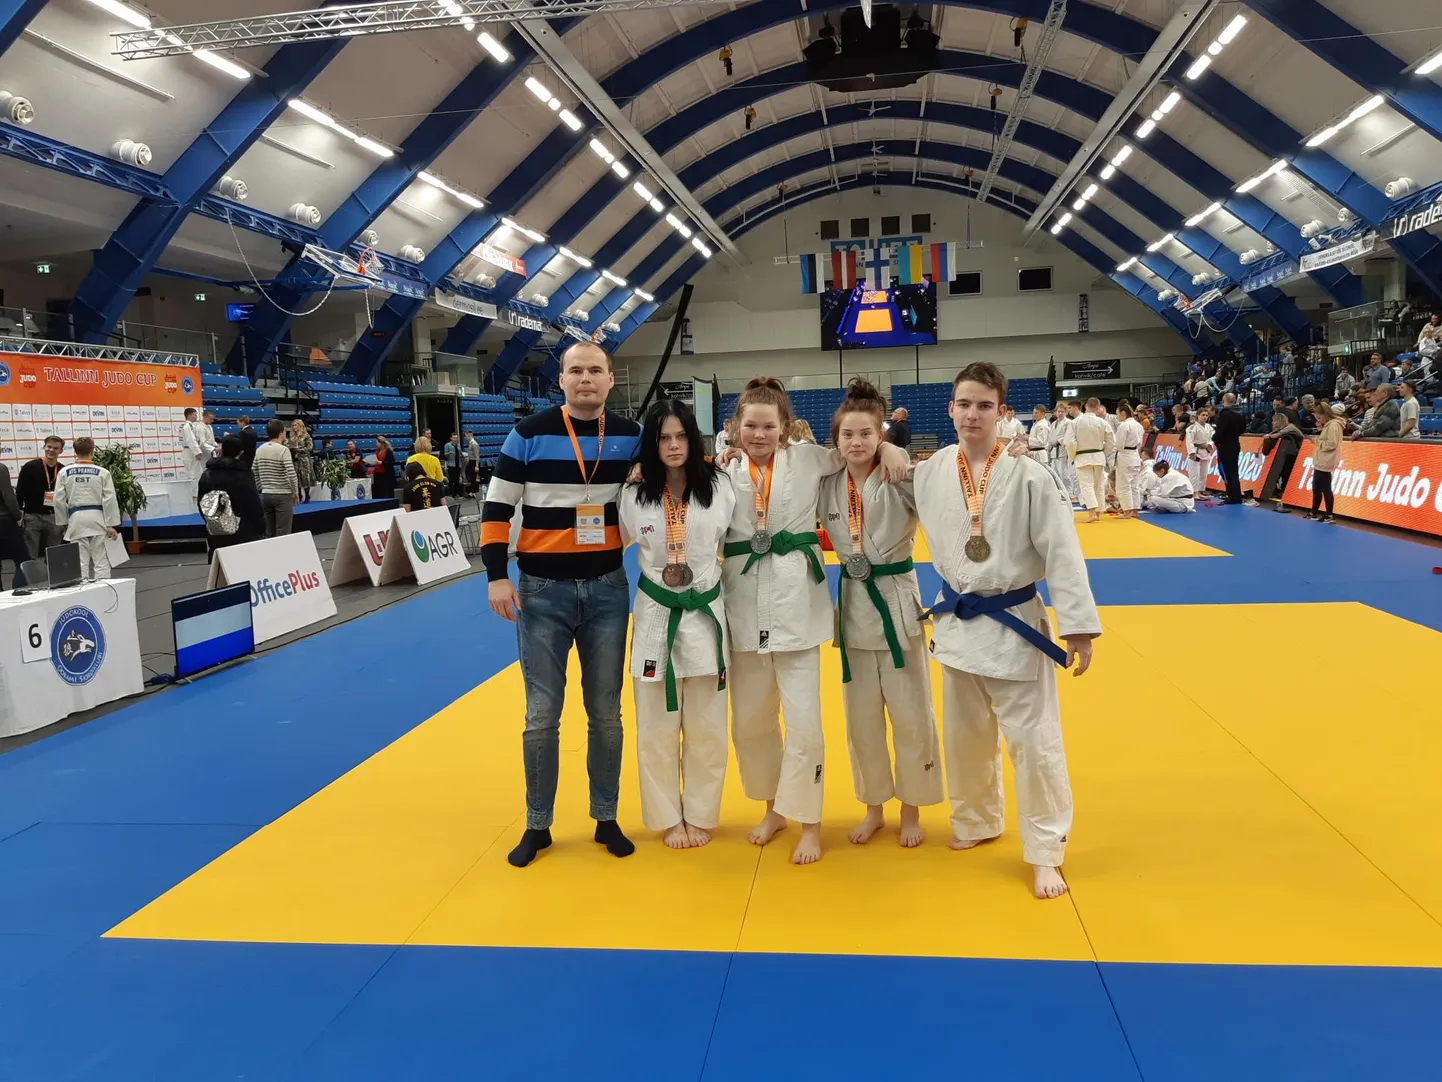 Rahvusvaheliselt Tallinn Judo Cupilt medali võitnud Pärnu judoklubi Samurai noorsportlased treener Asko Loogaga.